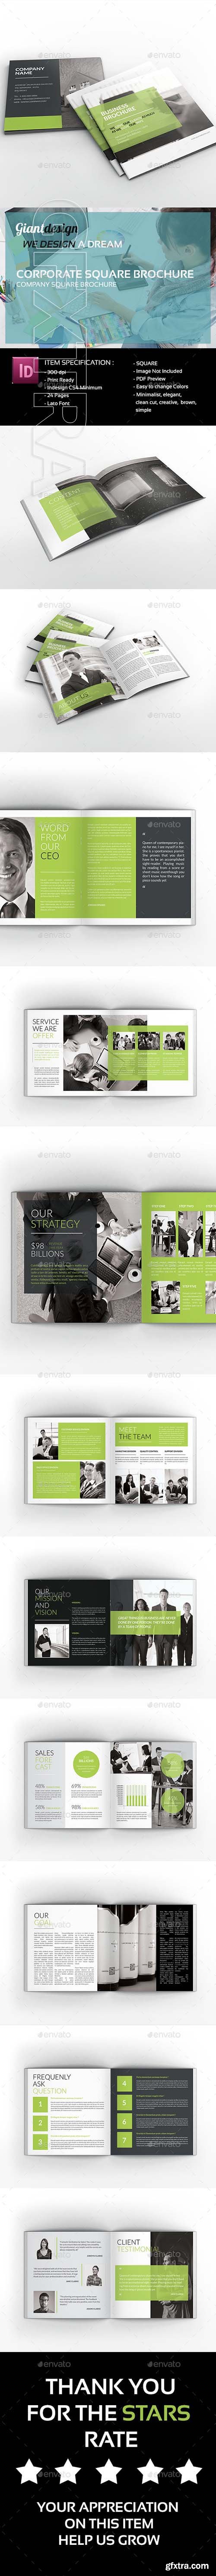 GraphicRiver - Corporate Square Brochure 21070446